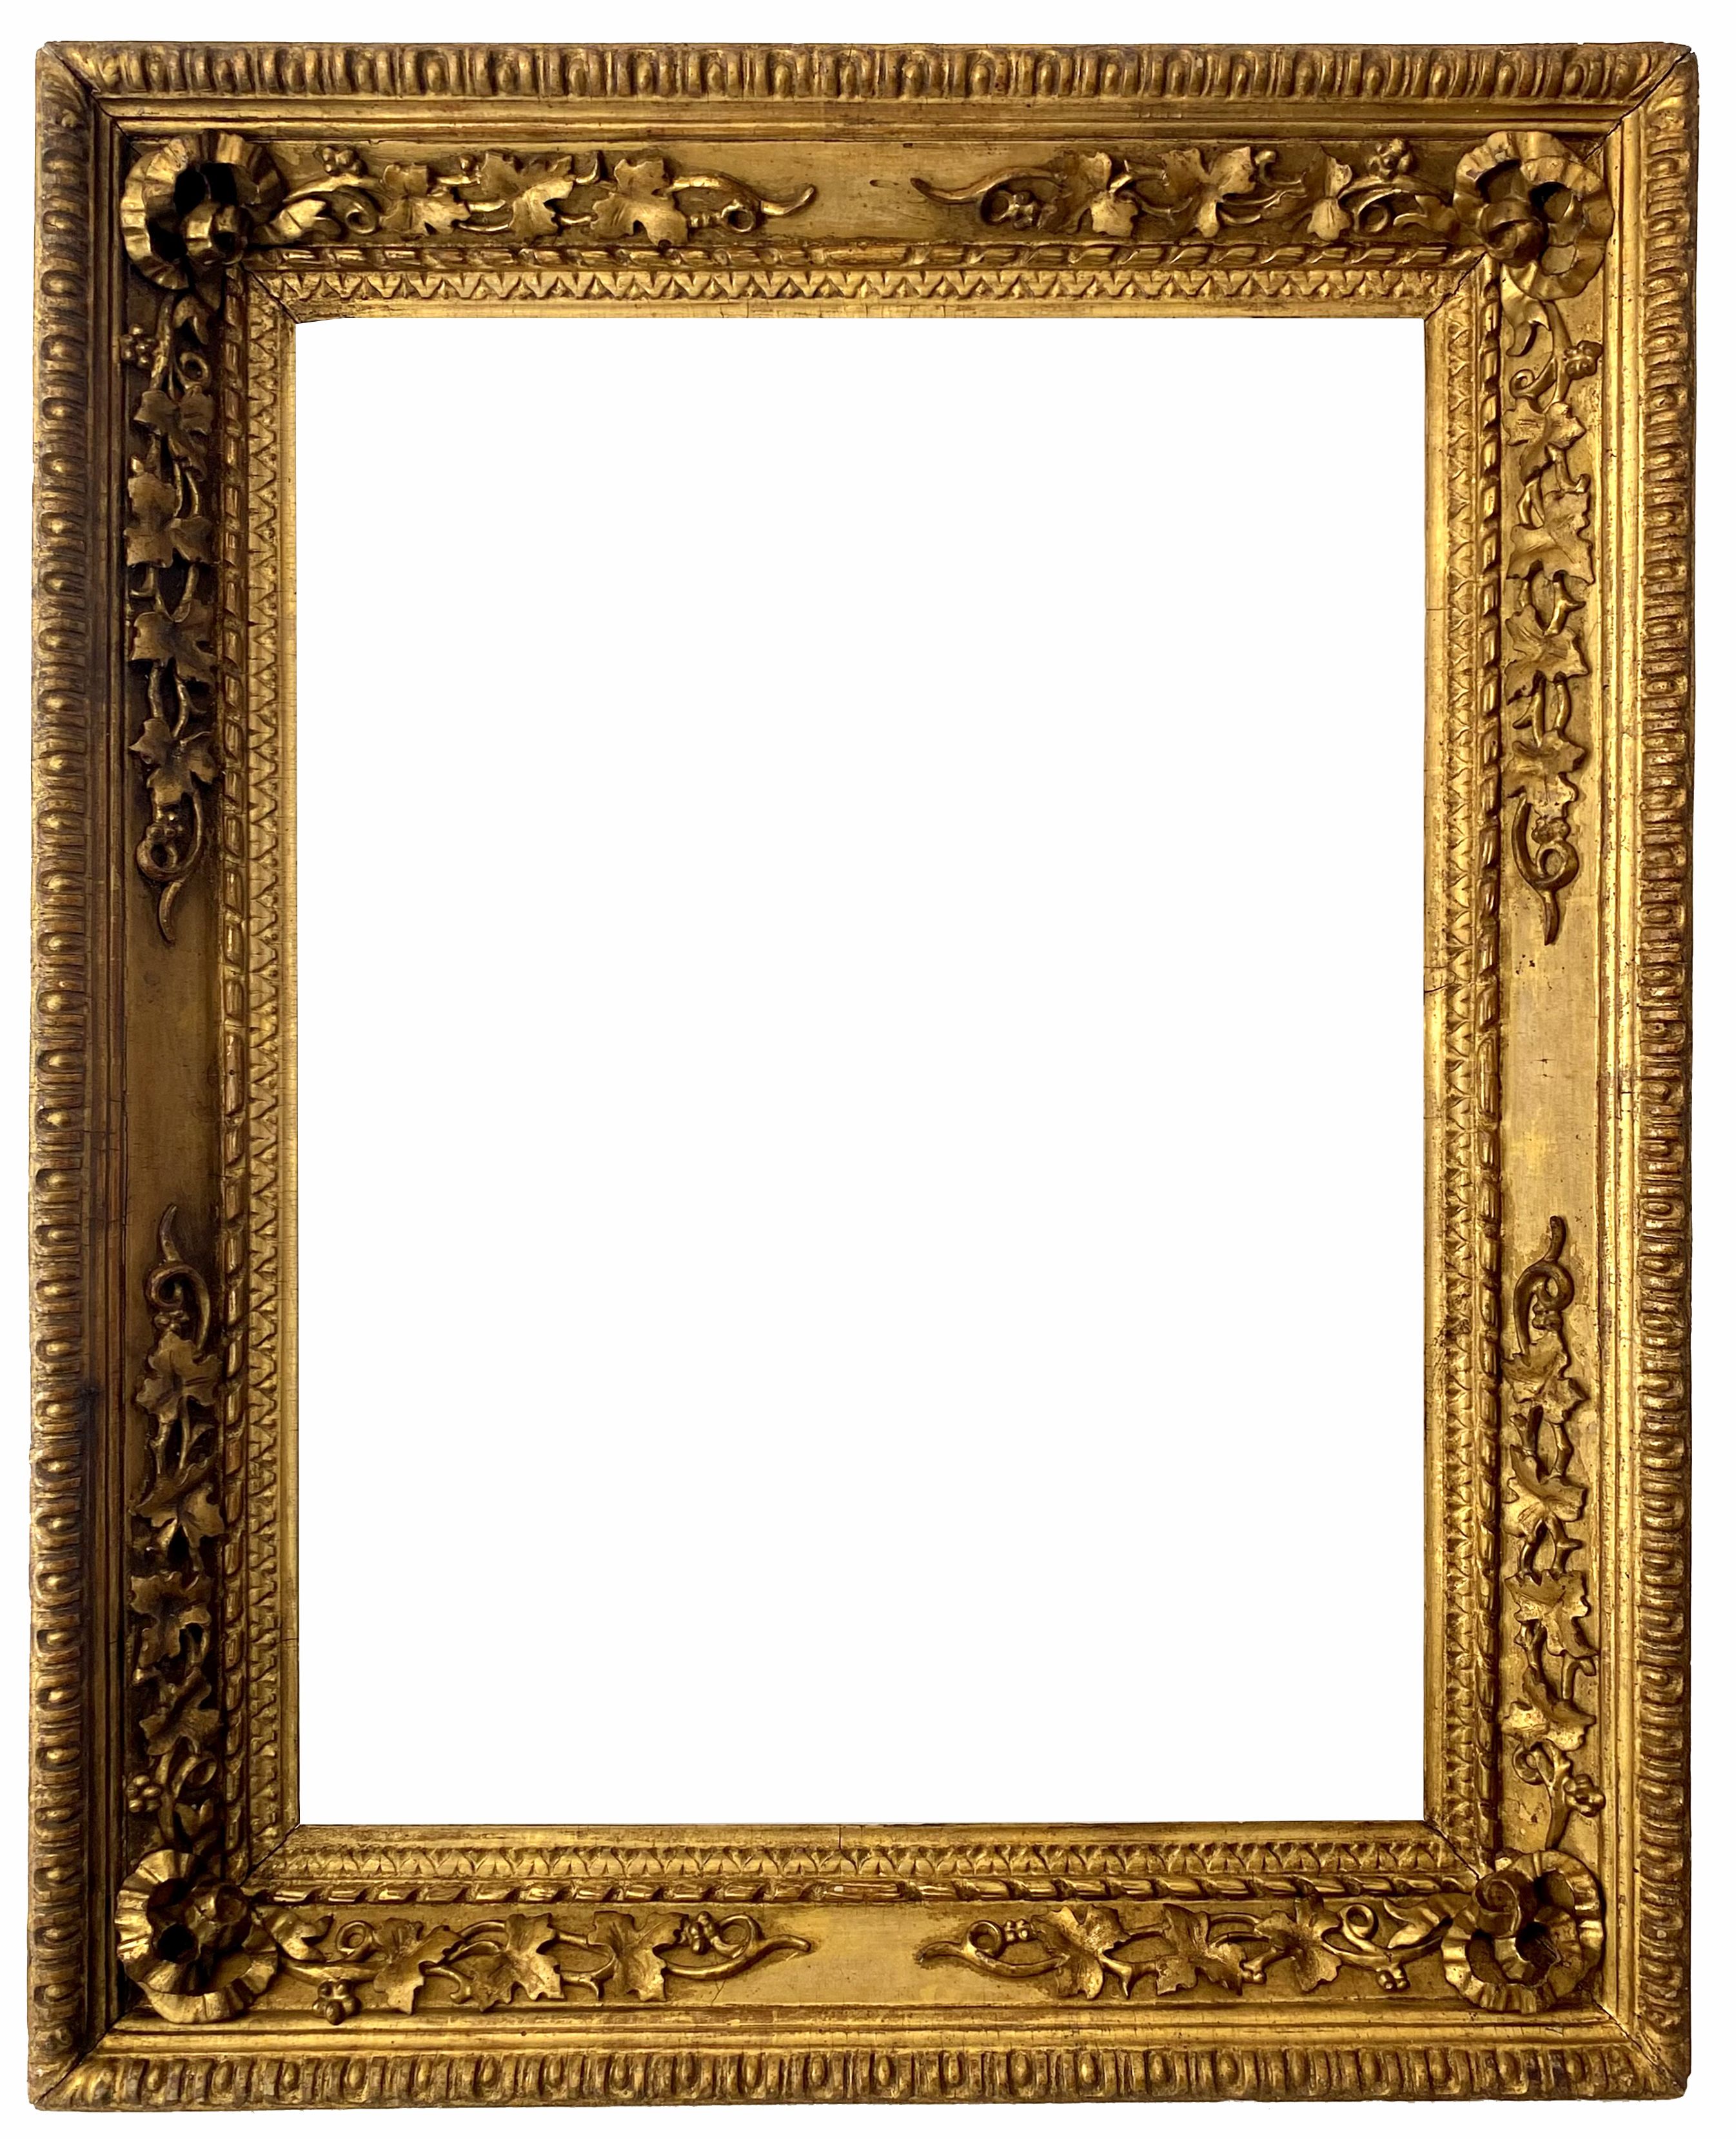 Cadre de style Napoléon III - 79,00 x 58,00 - REF - 1611